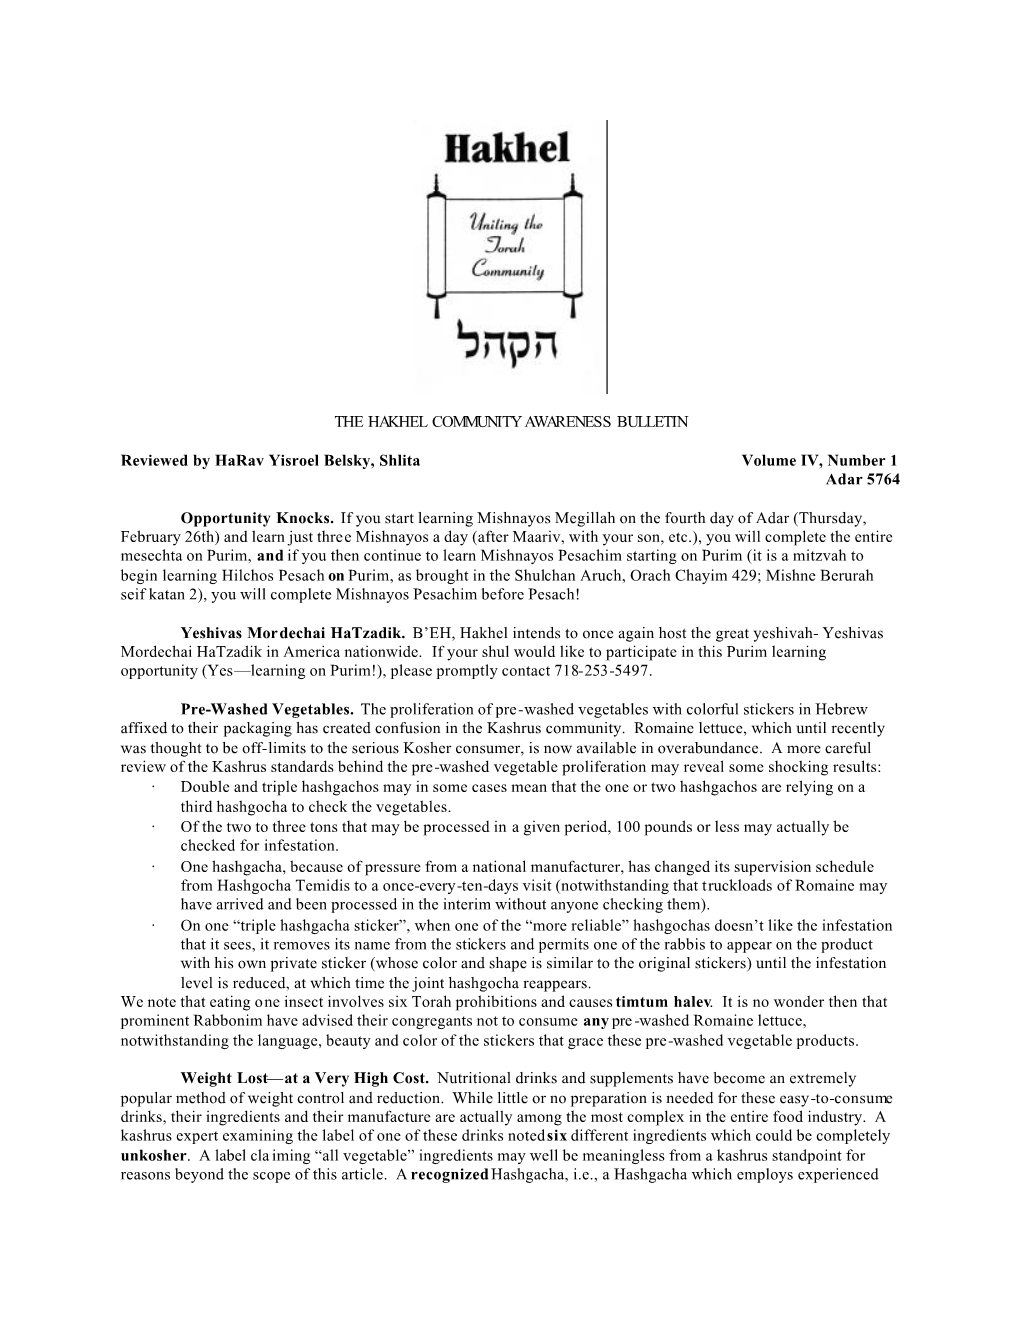 The Hakhel Community Awareness Bulletin